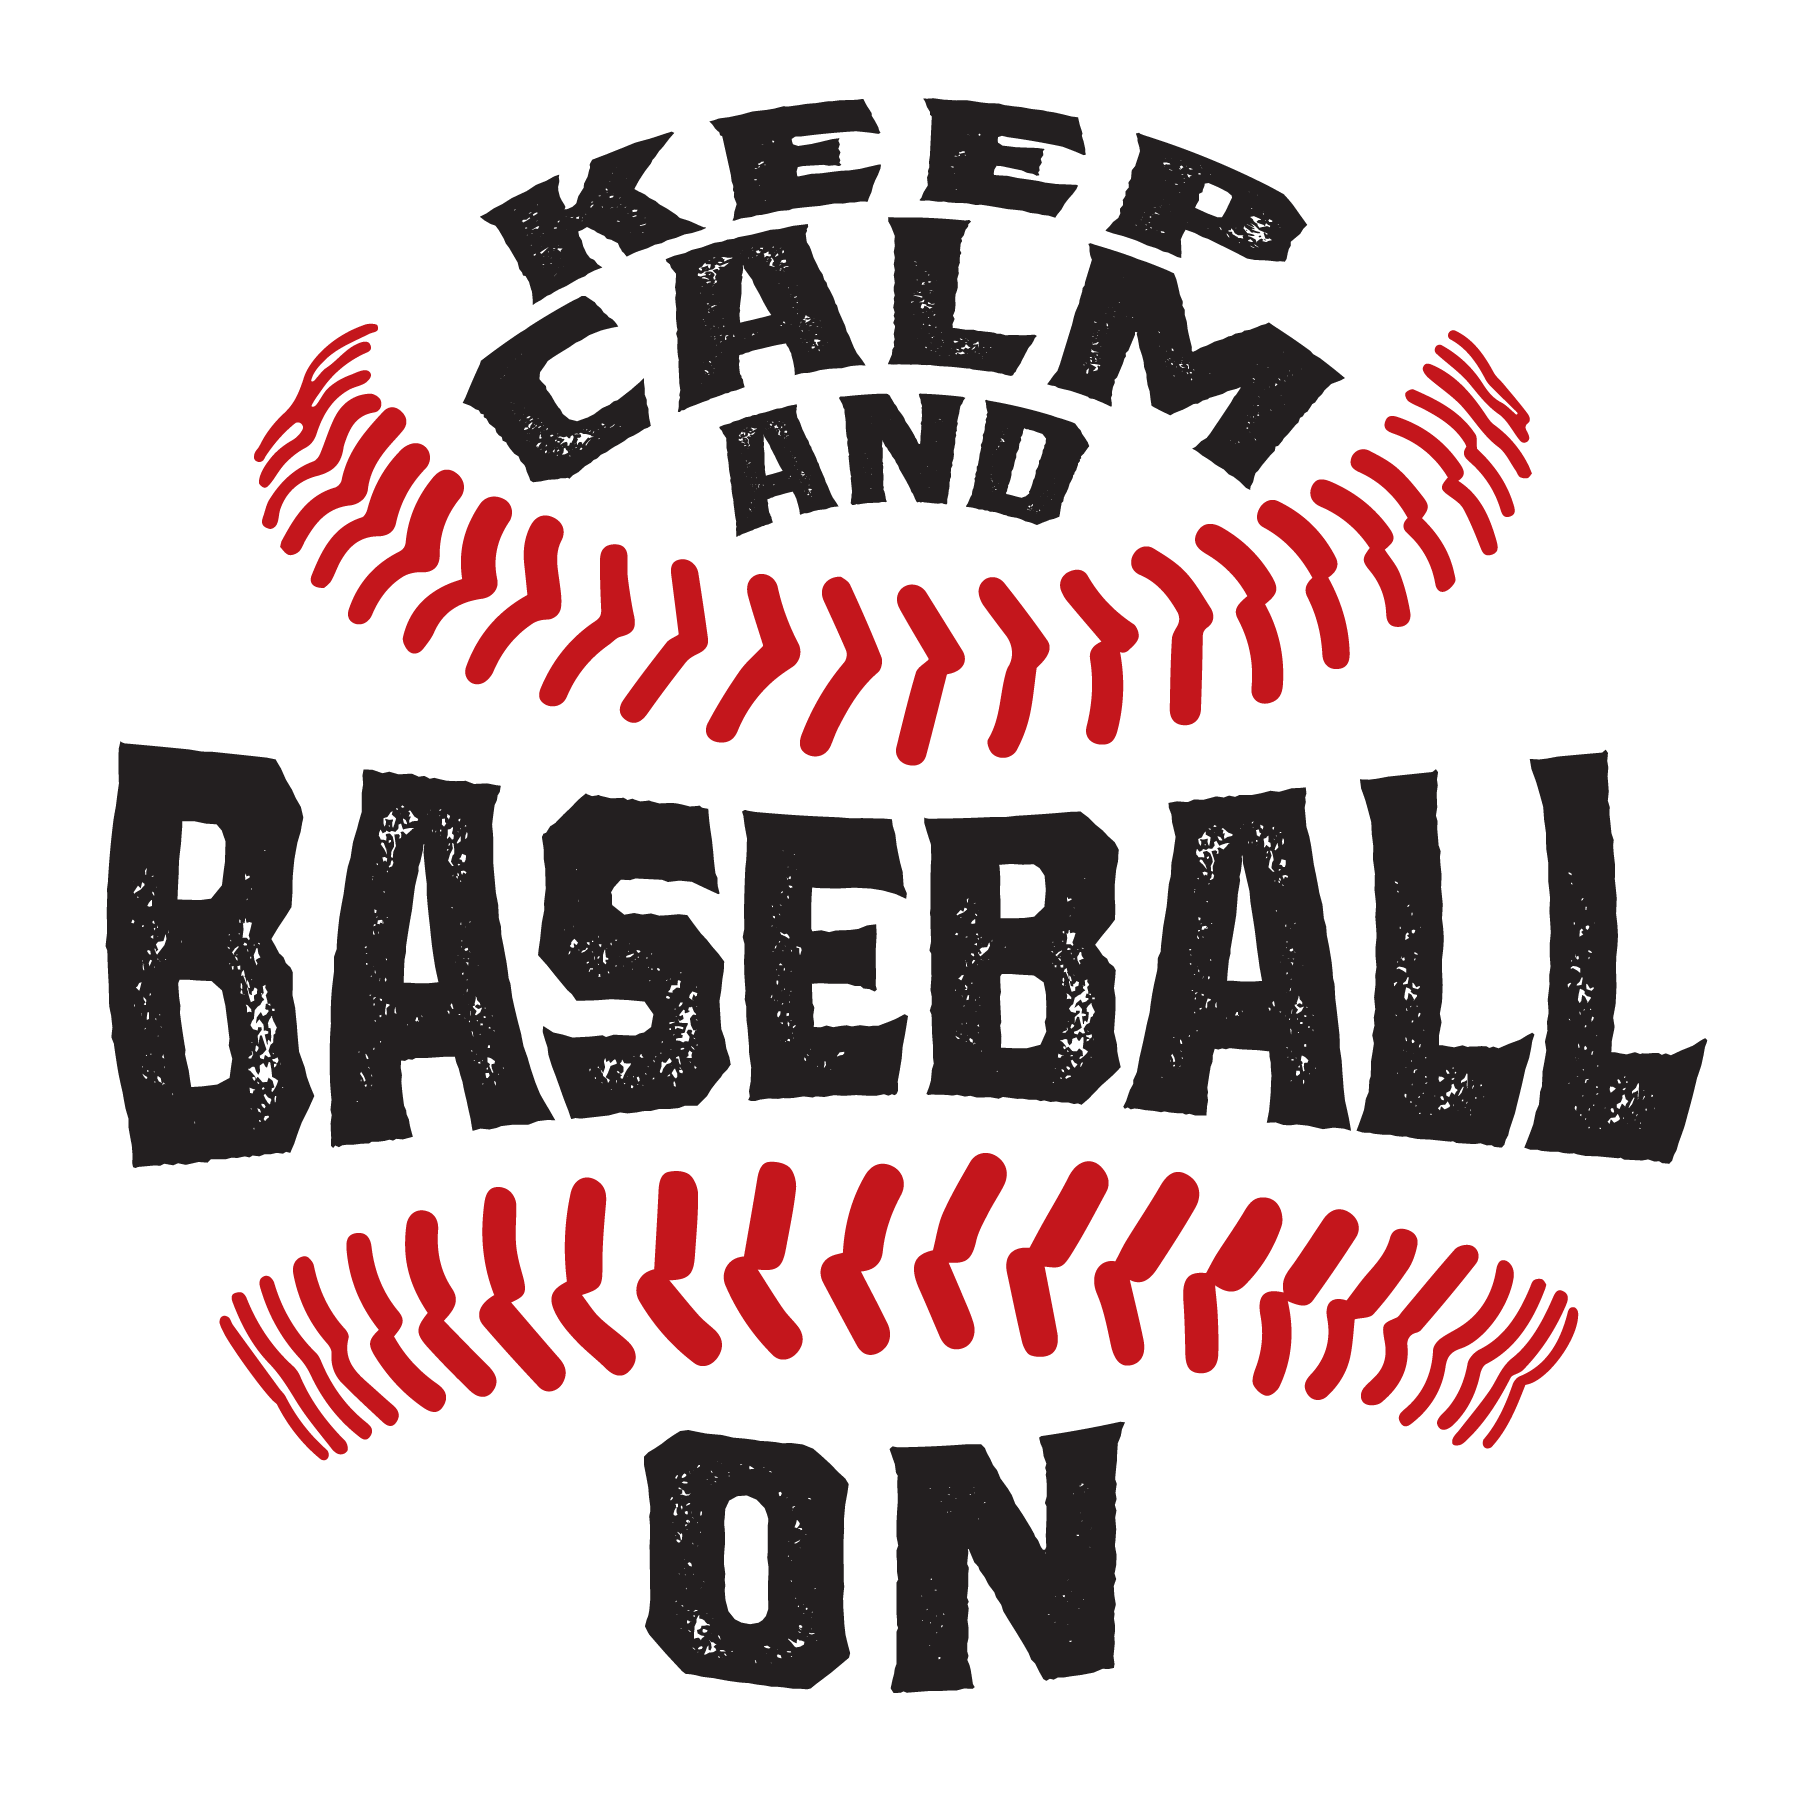 Keep Calm & Baseball On - The Sizzler Logo